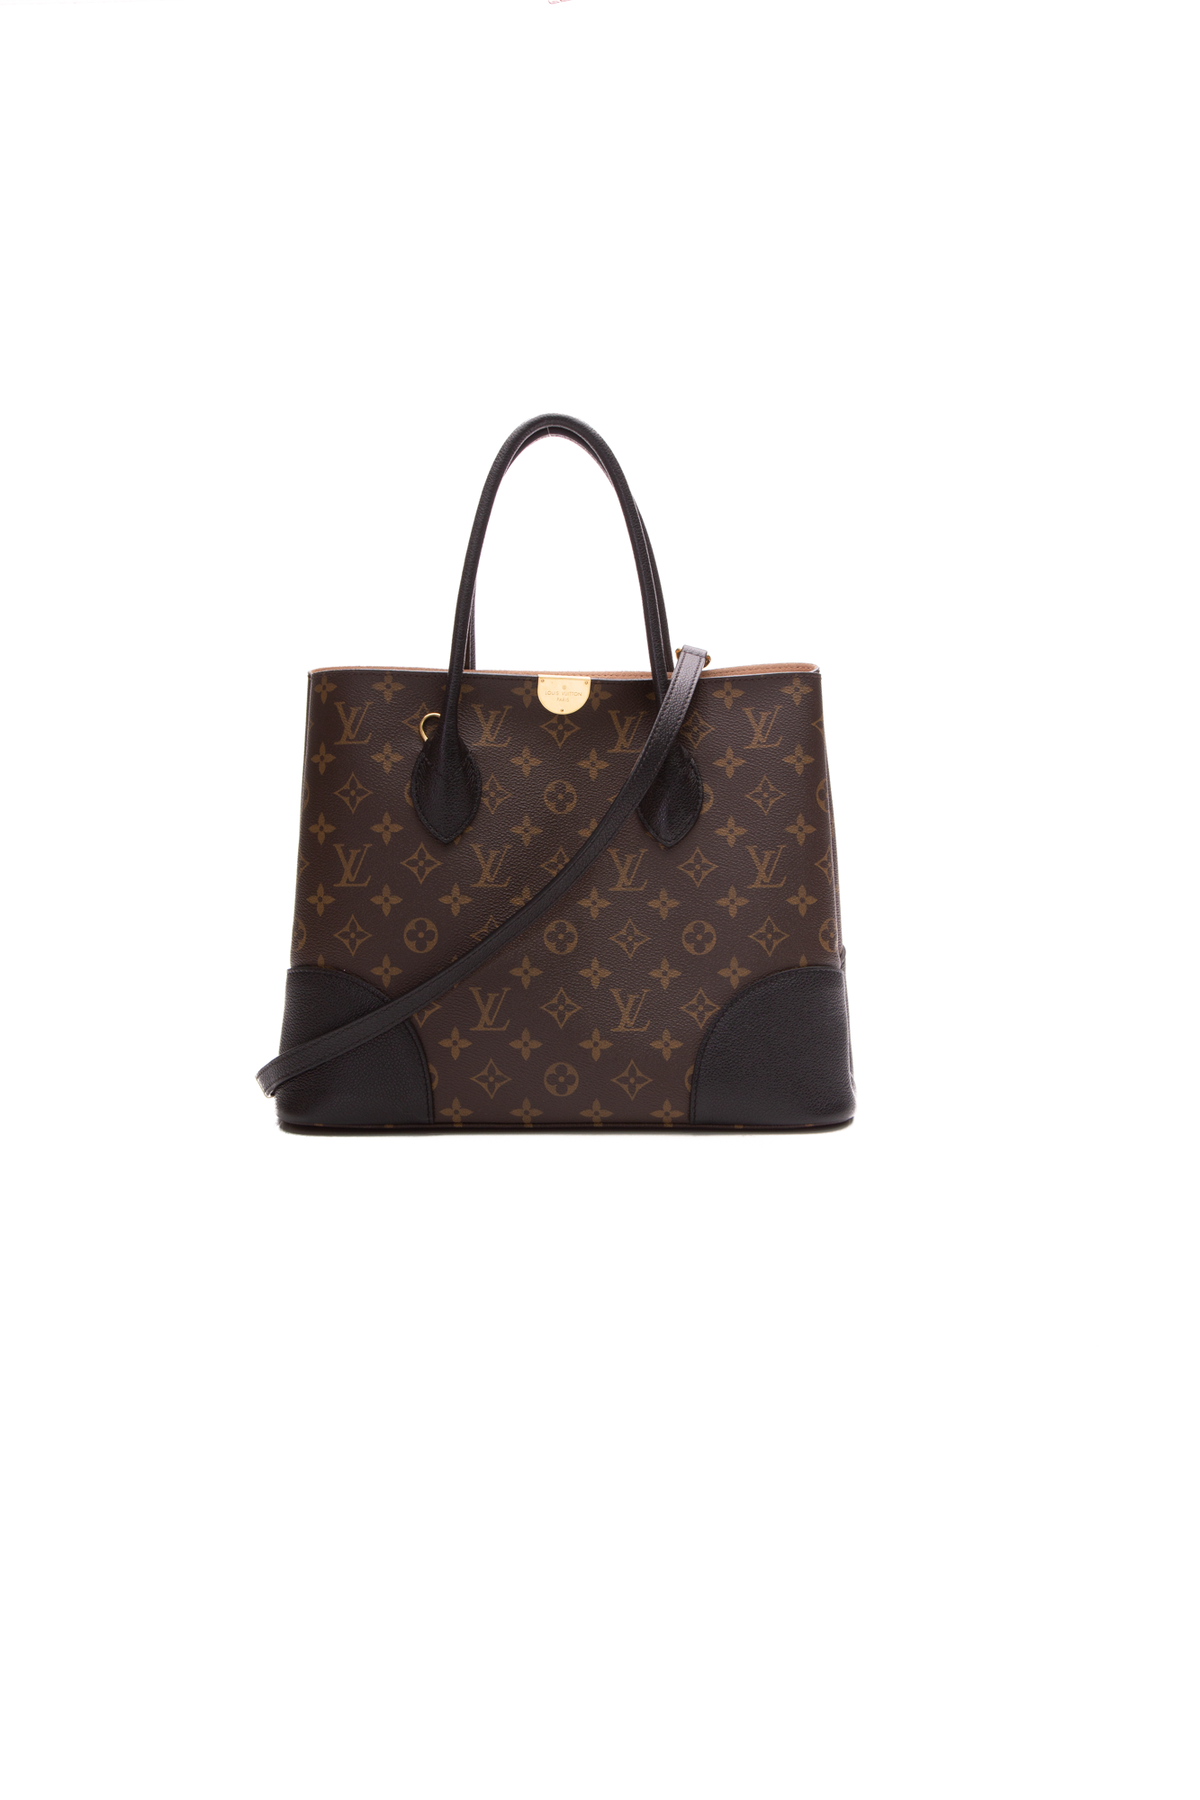 Authentic Louis Vuitton Flandrin Shoulder Bag Black / Brown